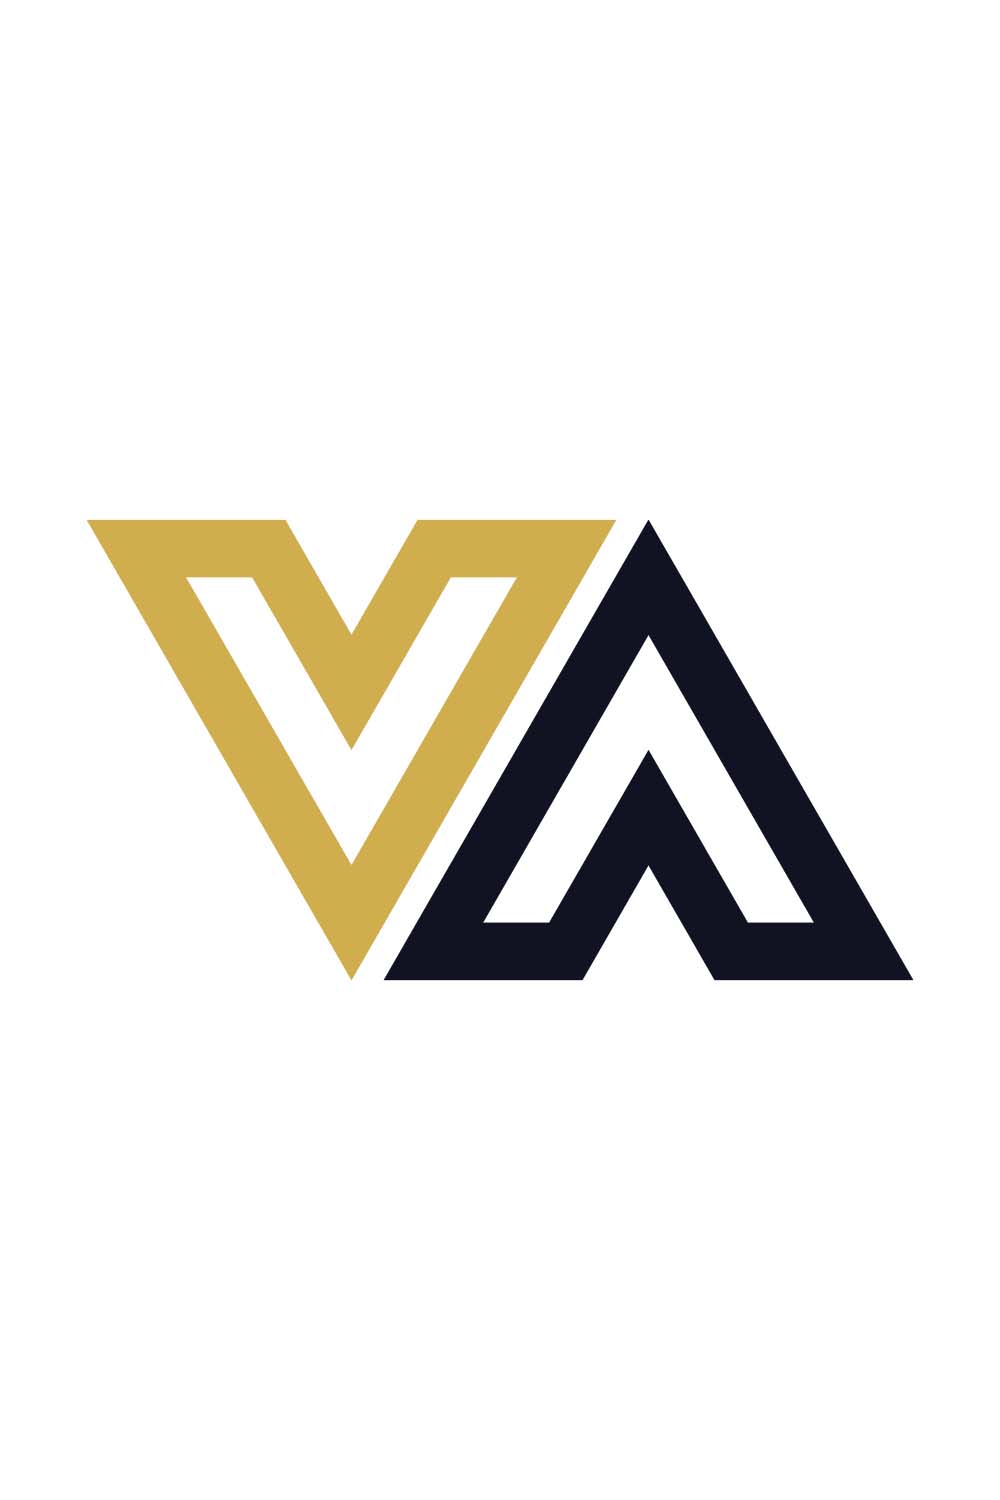 VA Letter Logo pinterest preview image.